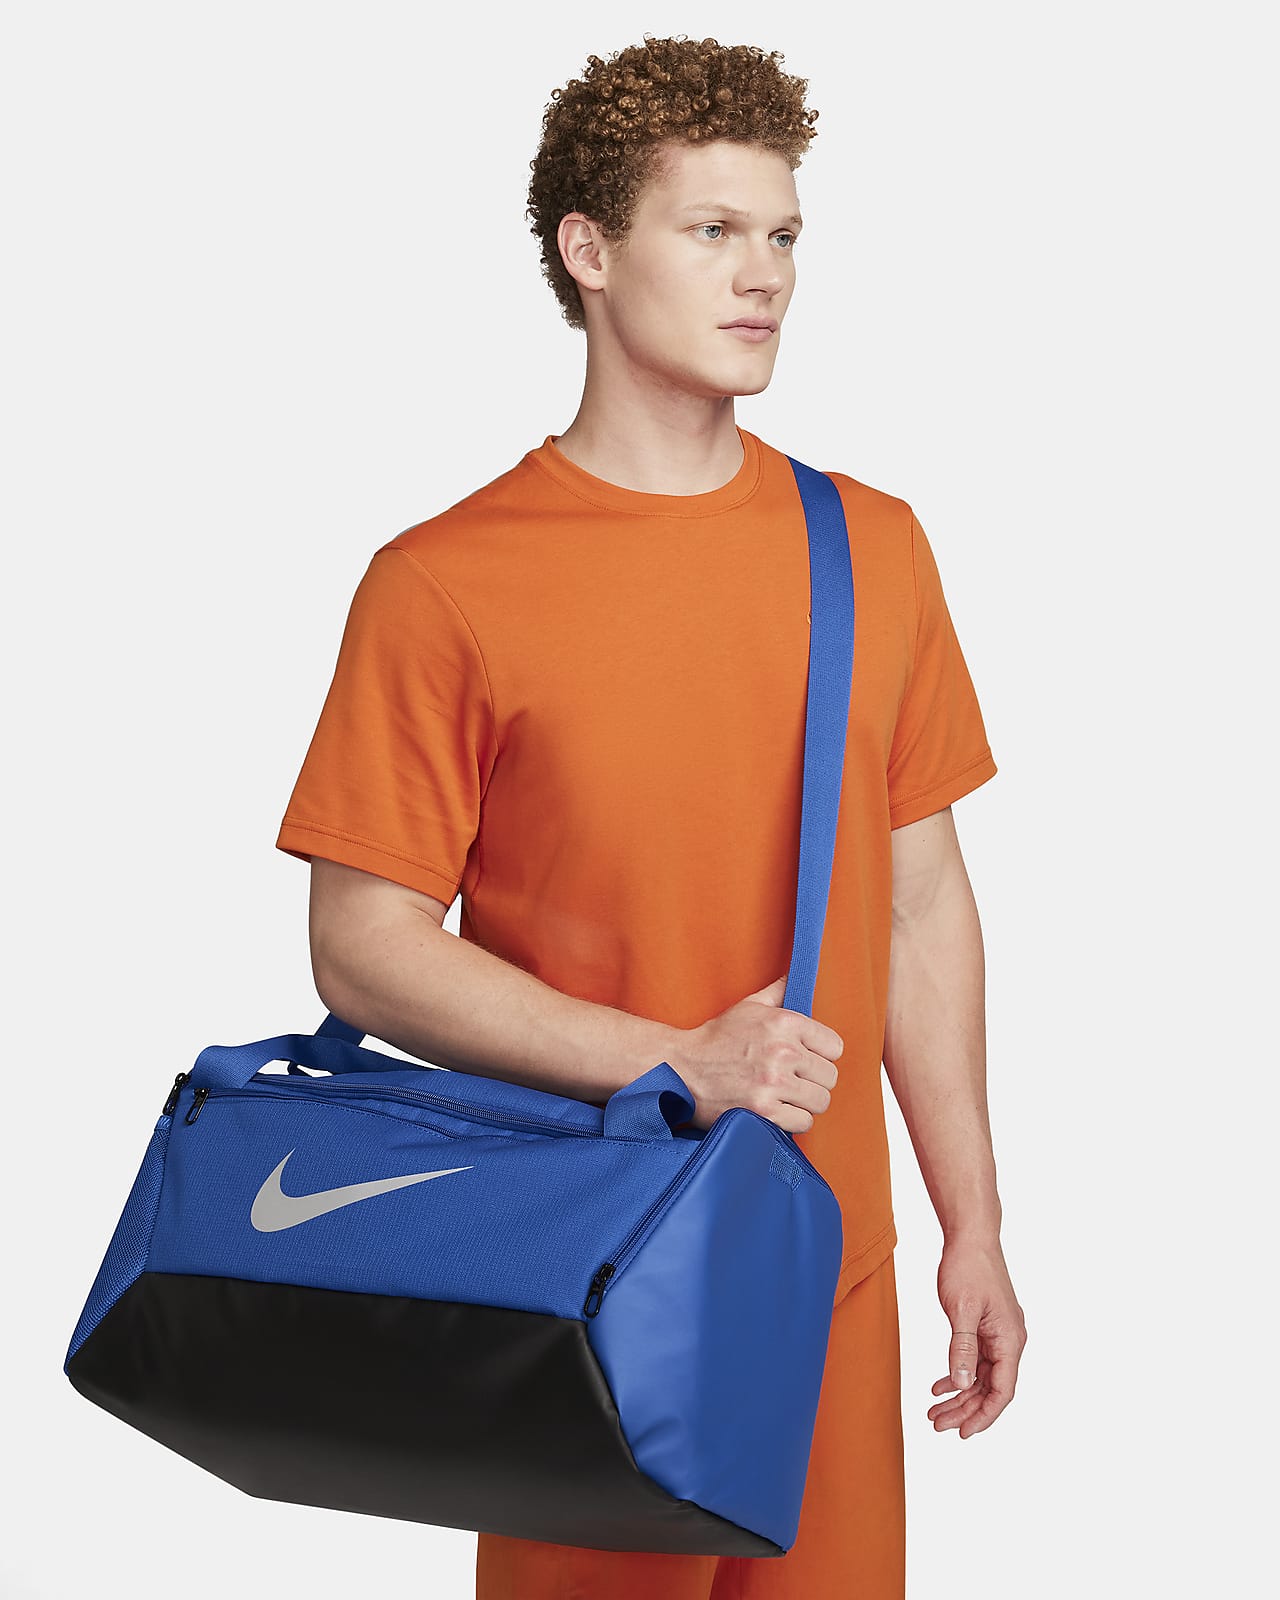 Nike Brasilia 9.5 Training Duffel Bag in Red/University Red Polyester,  Red/University Red, Training Duffel Bag